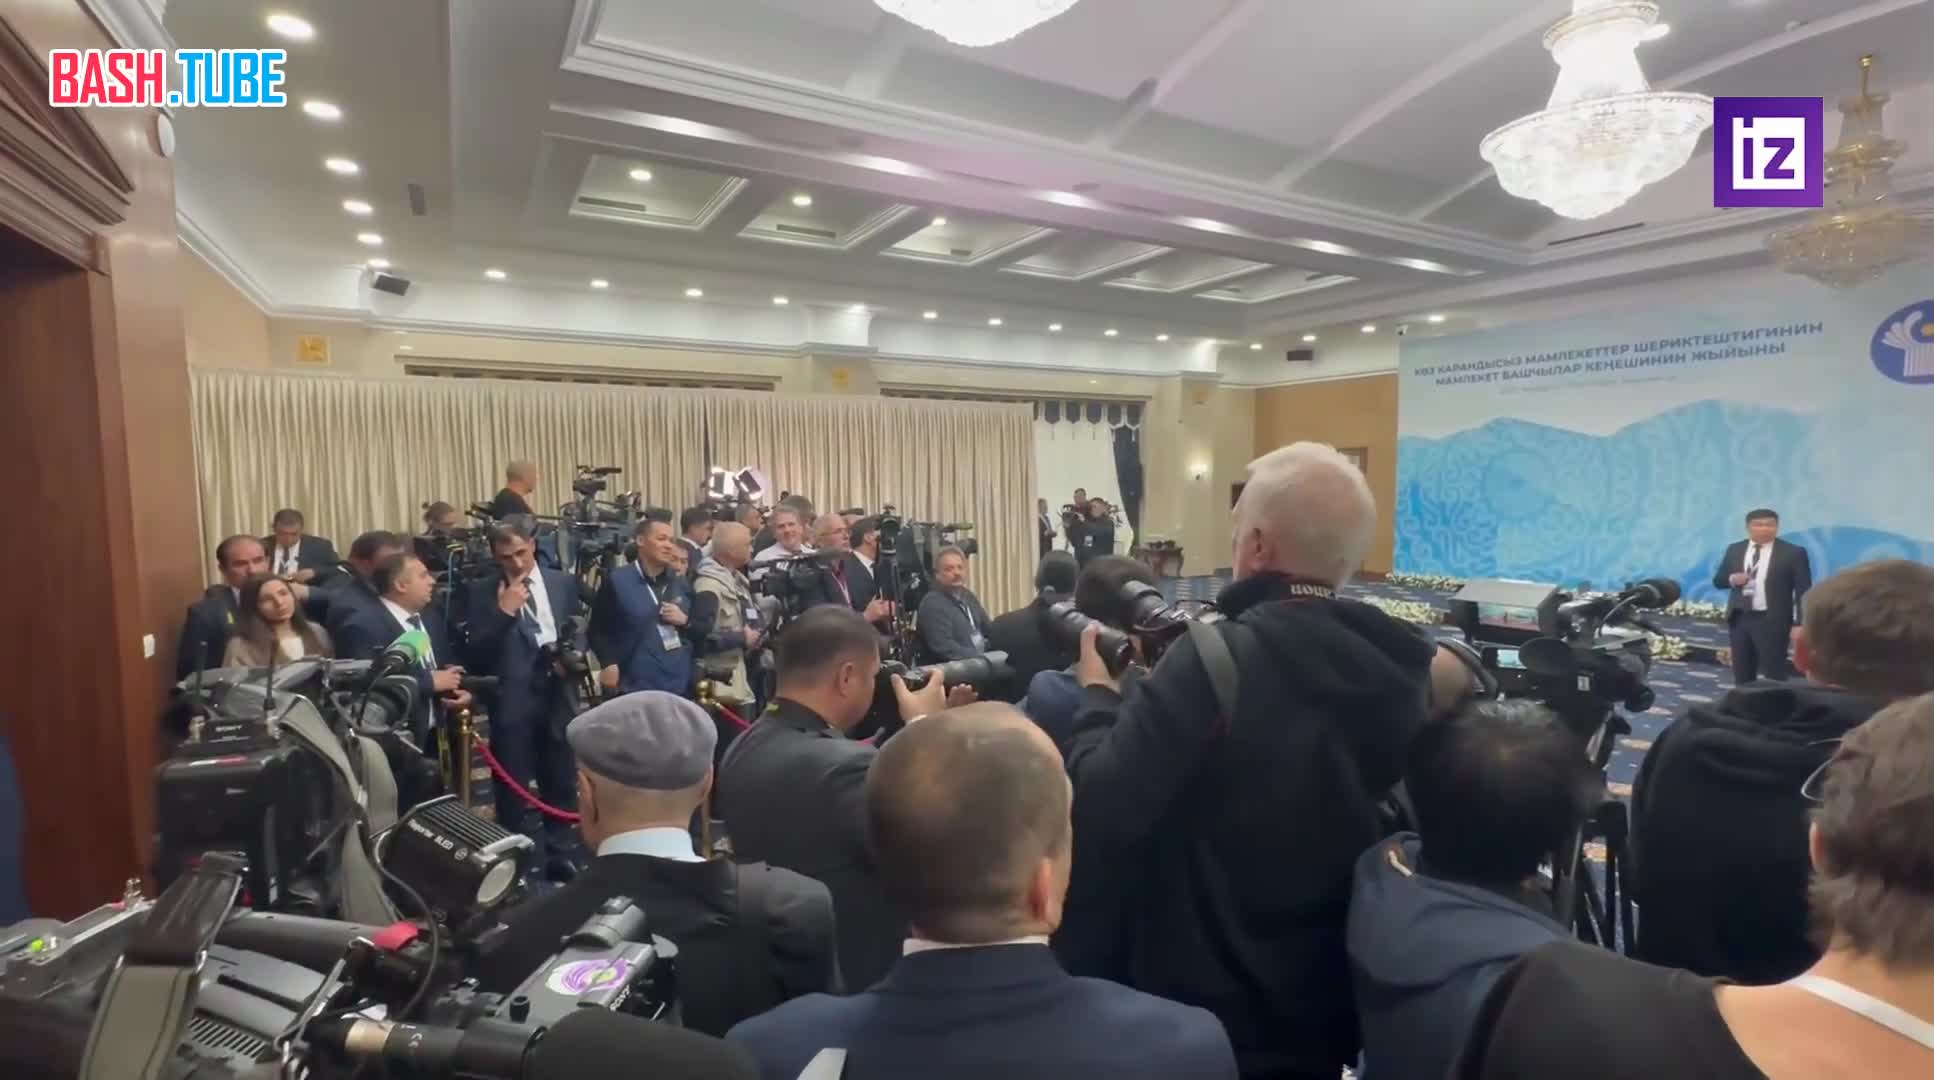 ⁣ Корреспондент Алексей Лазуренко показал обстановку перед заседанием Совета глав государств СНГ в Бишкеке